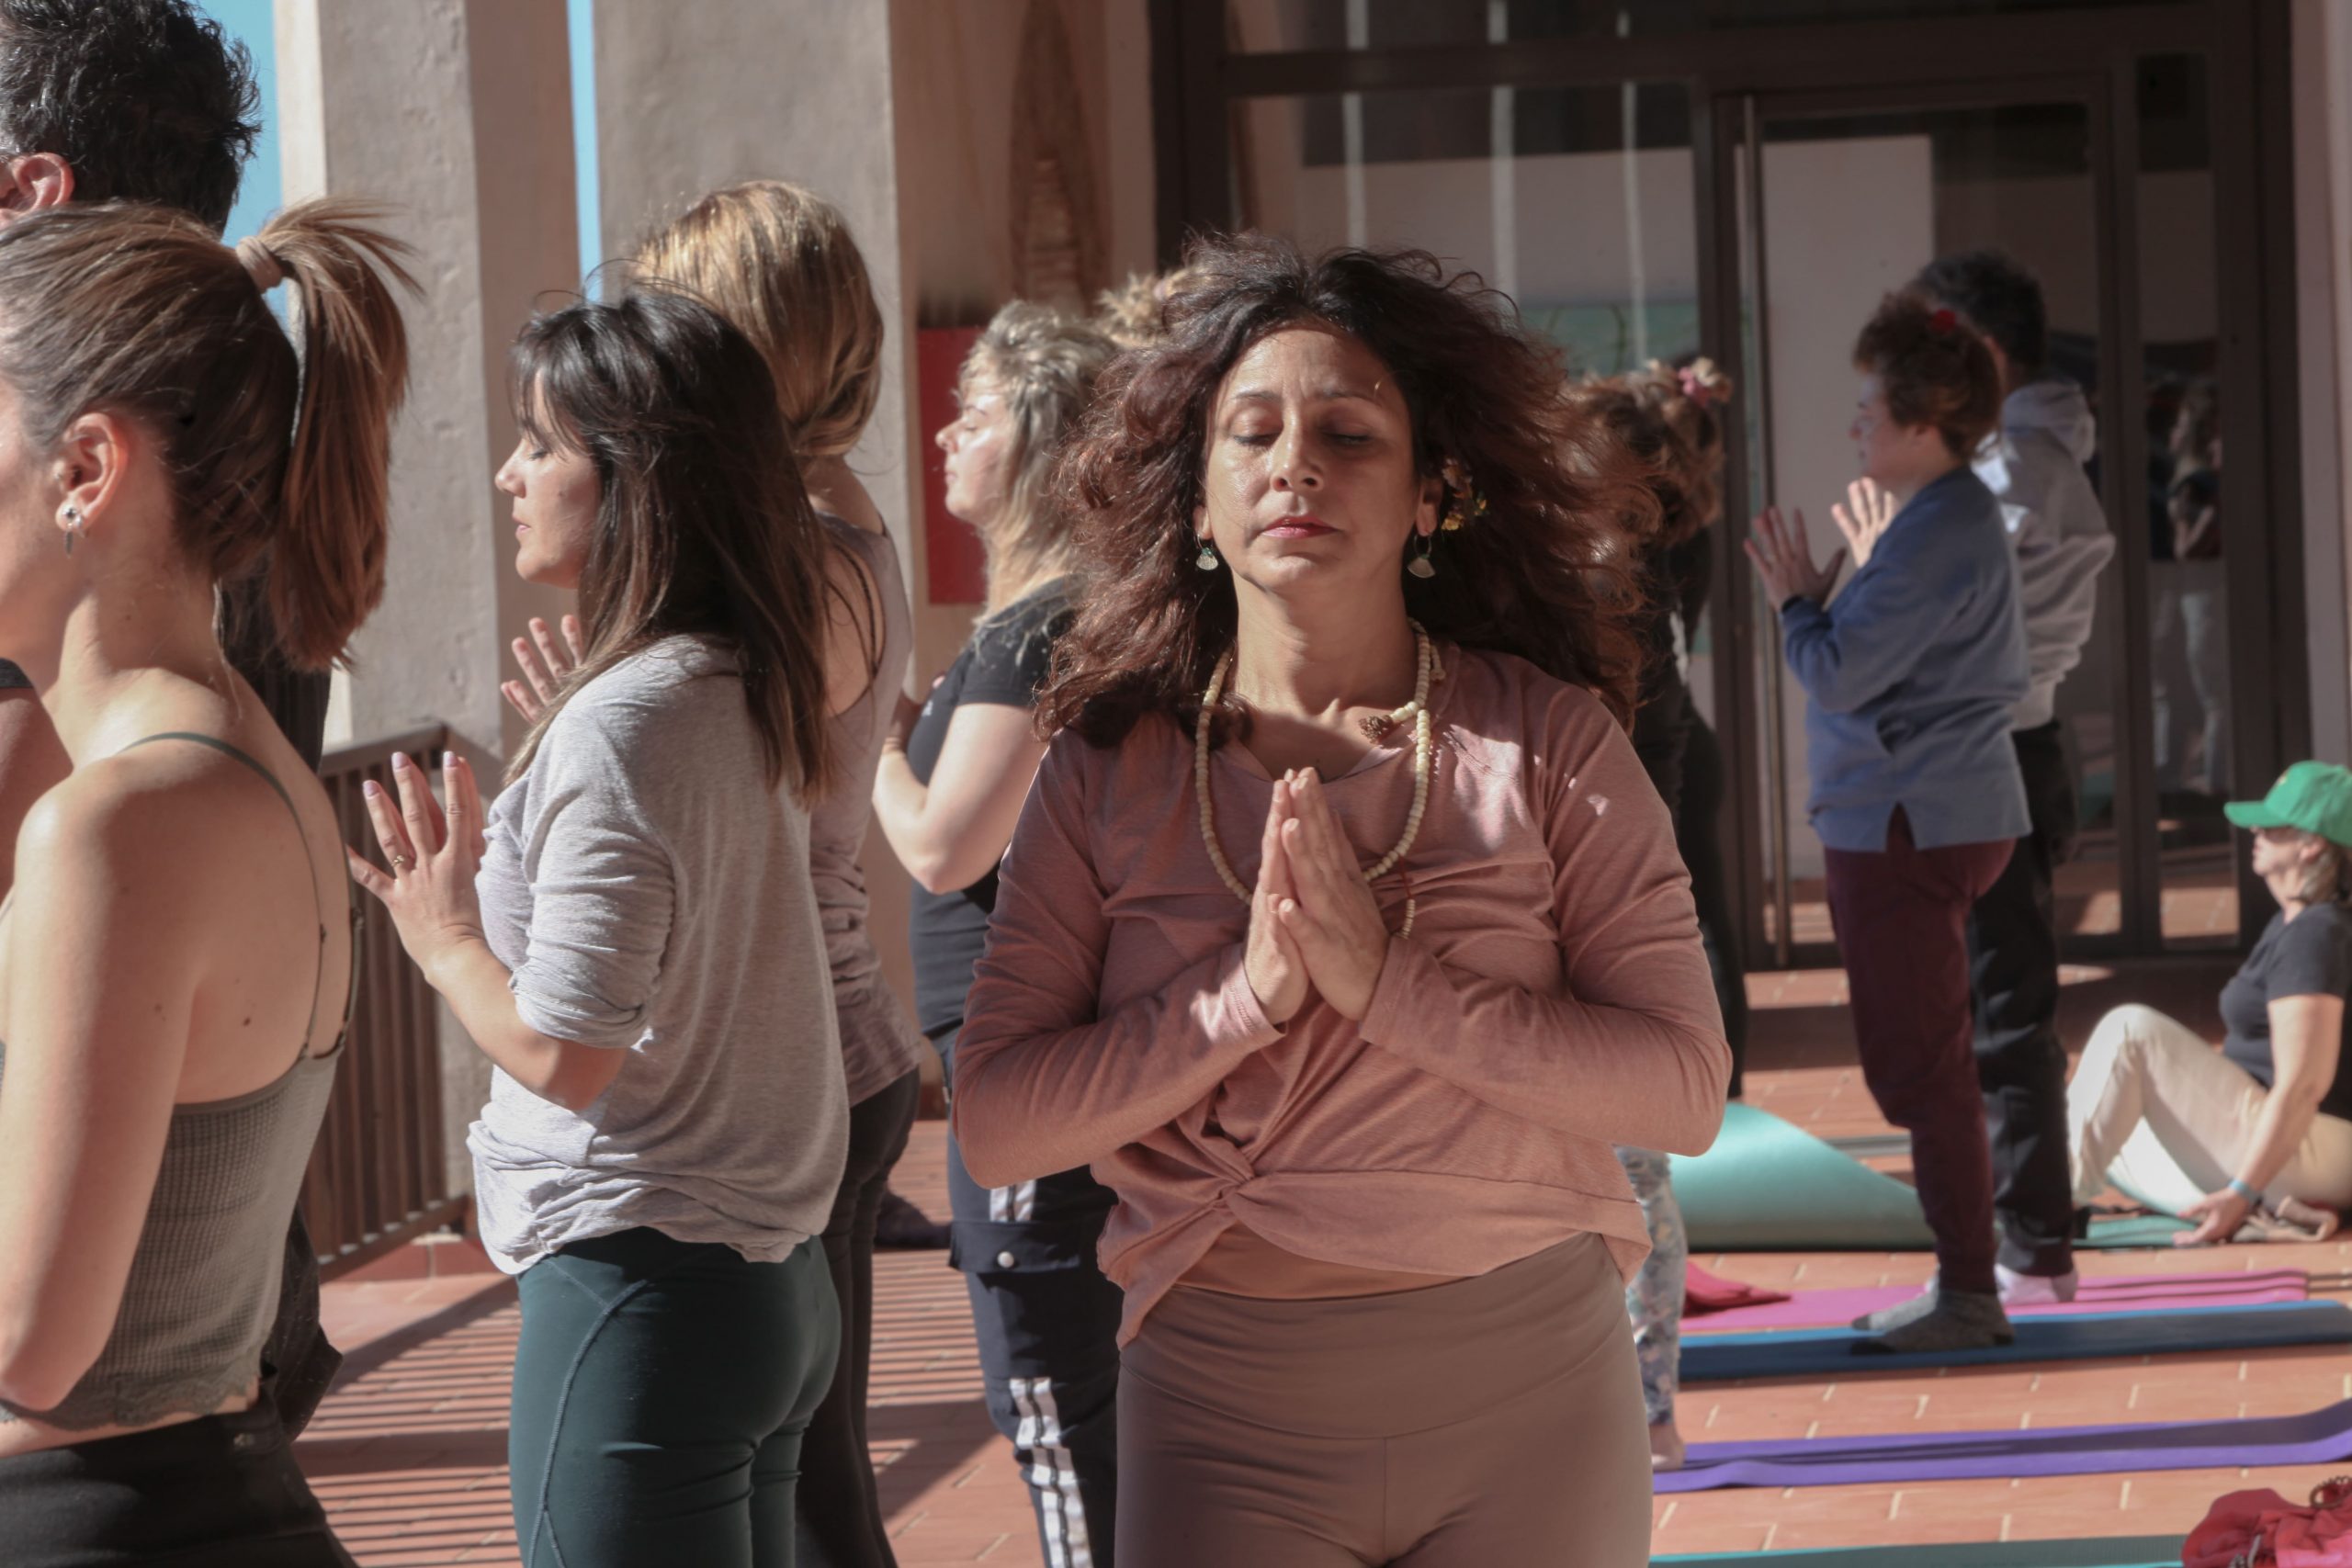 Formación de Yoga y Meditación - Diana Vayus Yoga